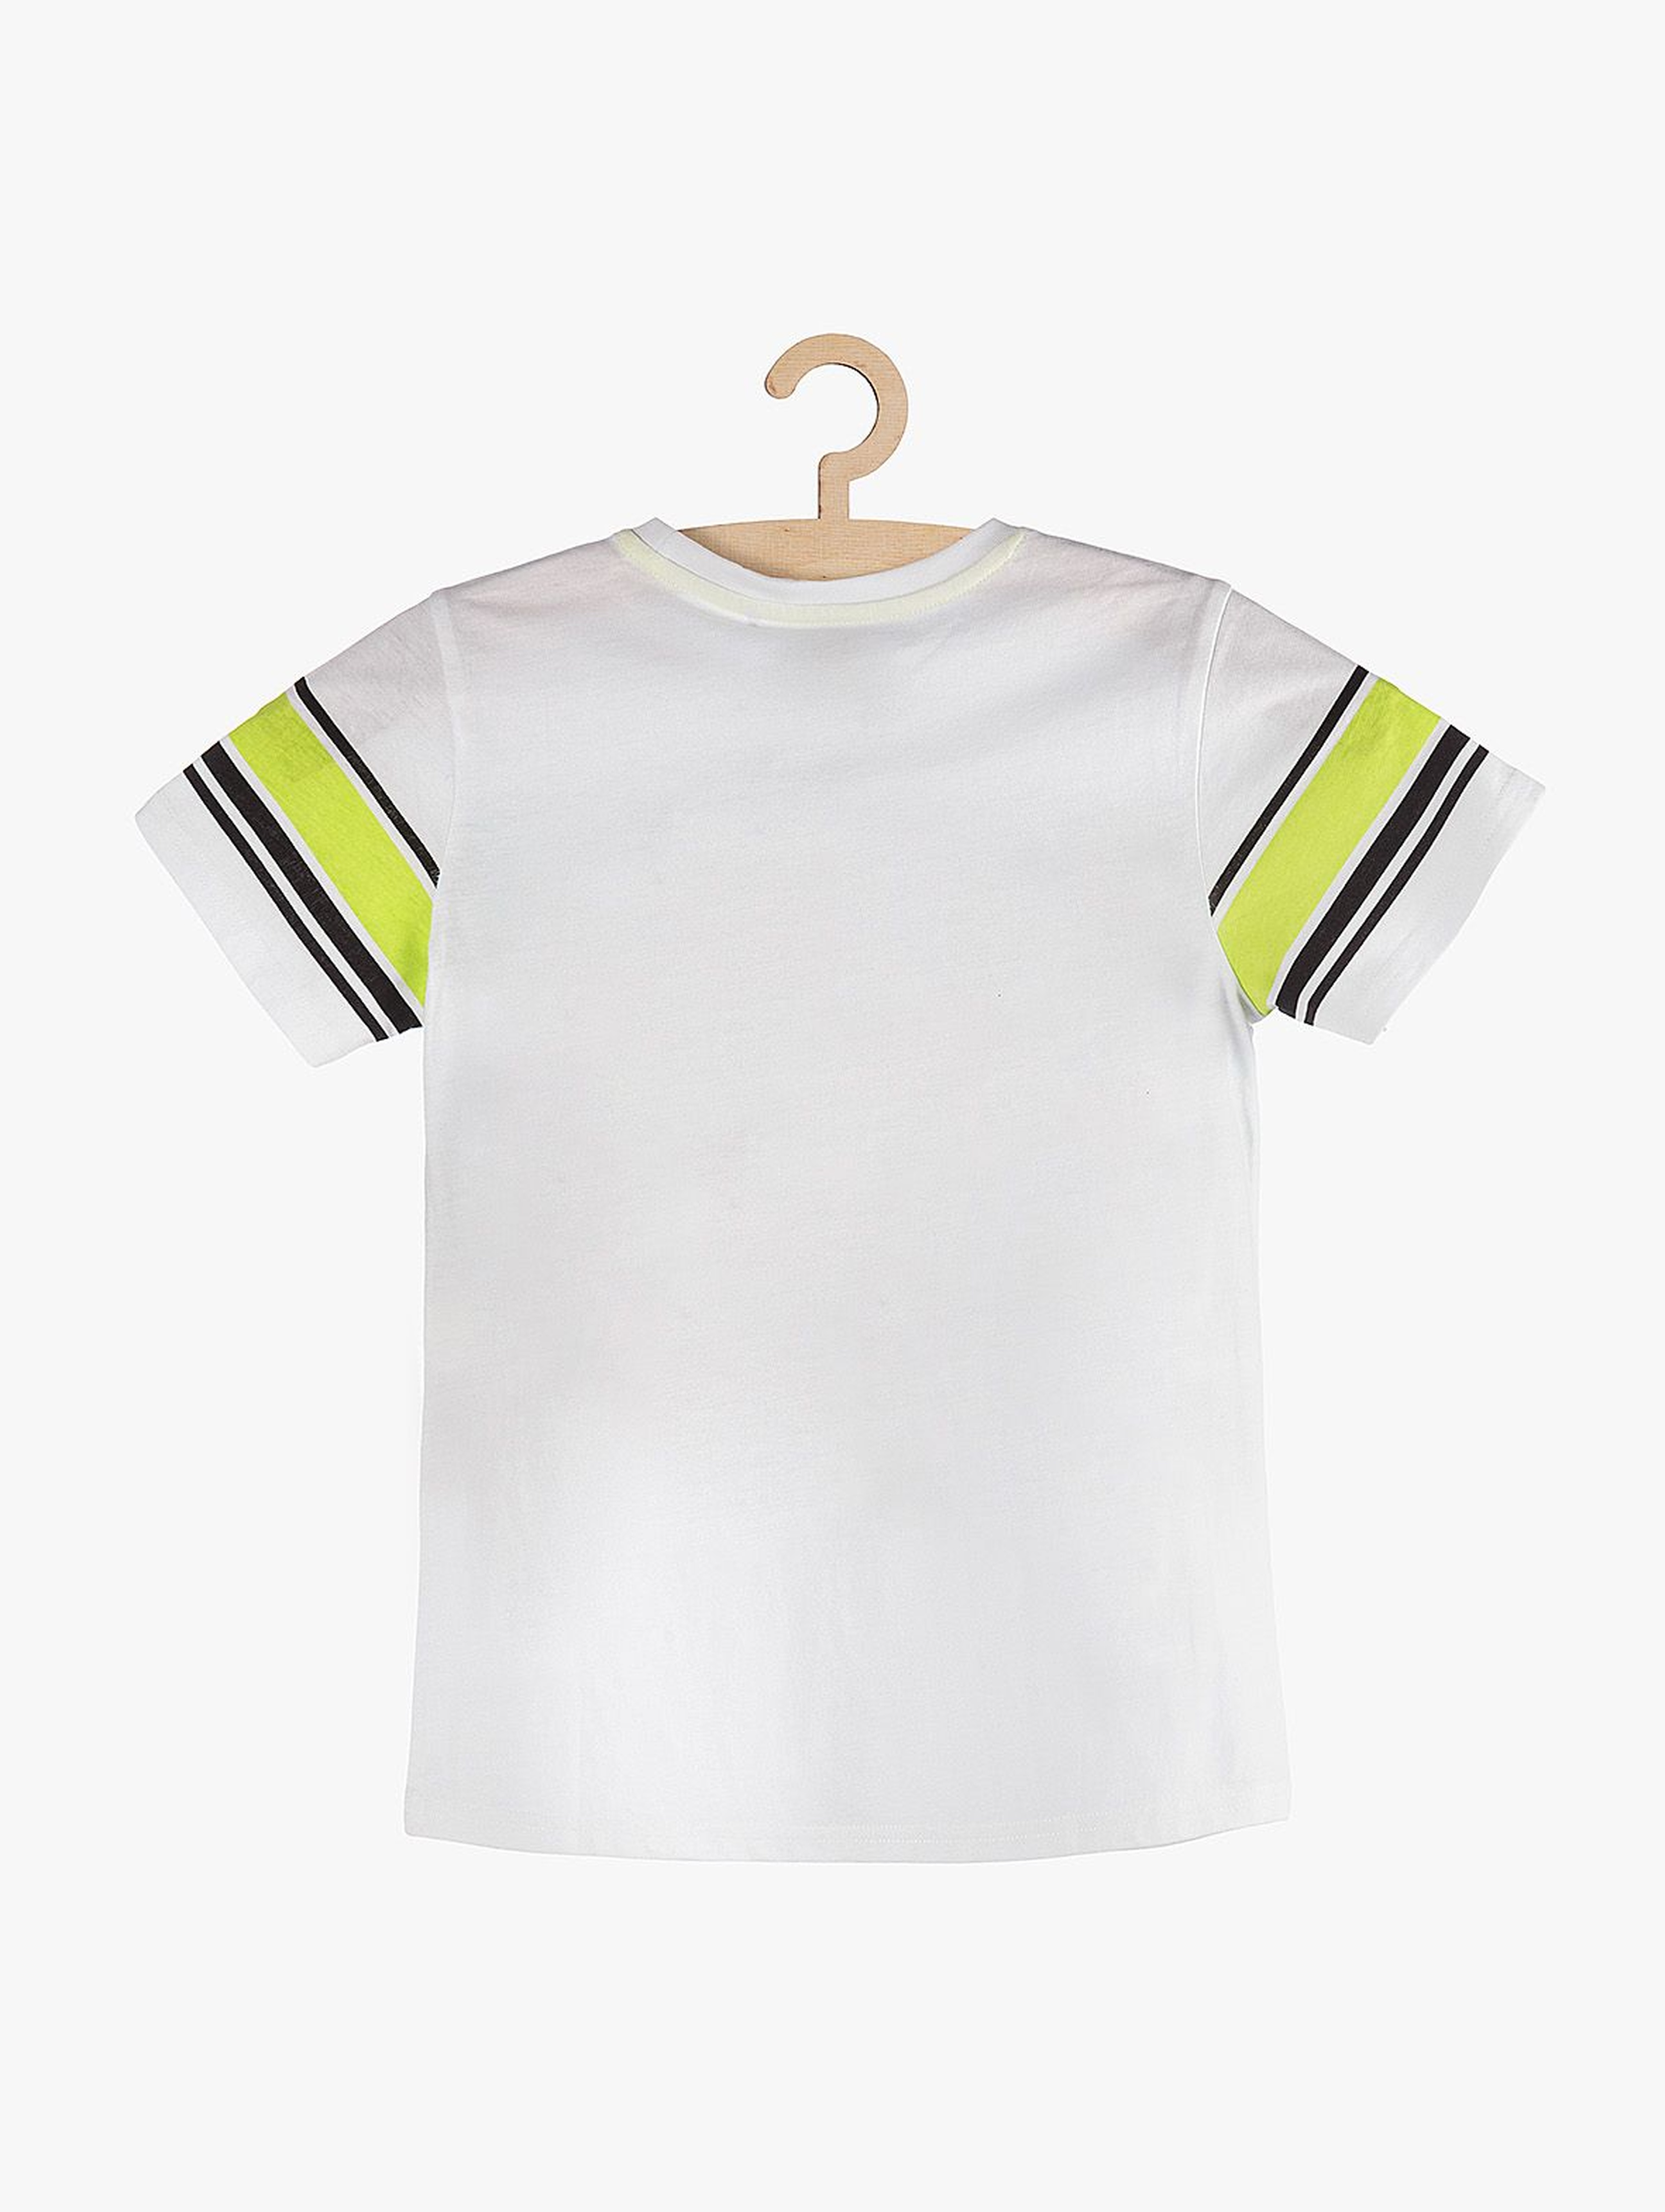 T-Shirt chłopięcy biały z kolorowymi nadrukami